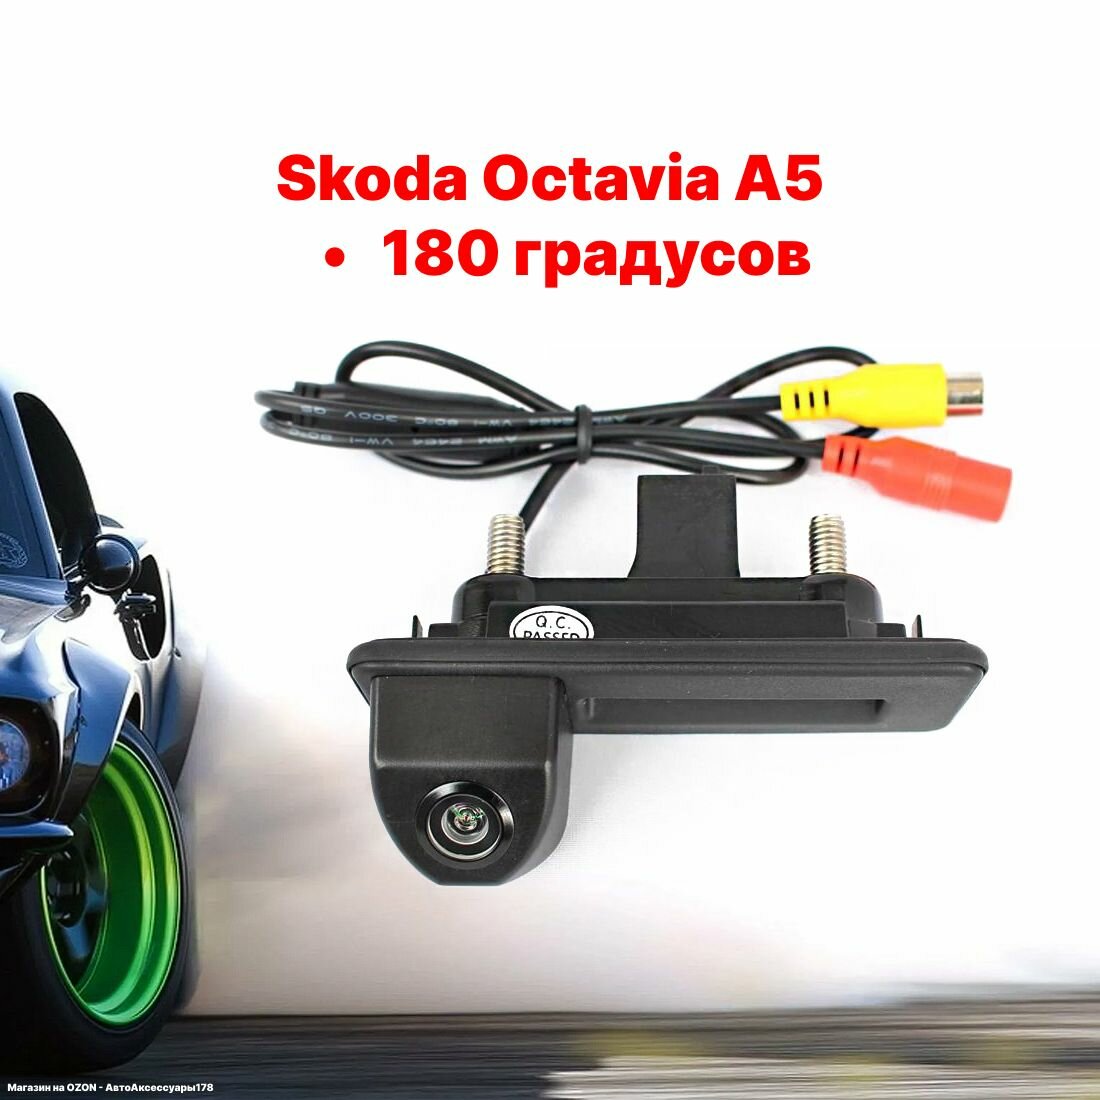 Камера заднего вида в ручку багажника Шкода Октавия А5 - 180 градусов (Skoda Octavia A5)